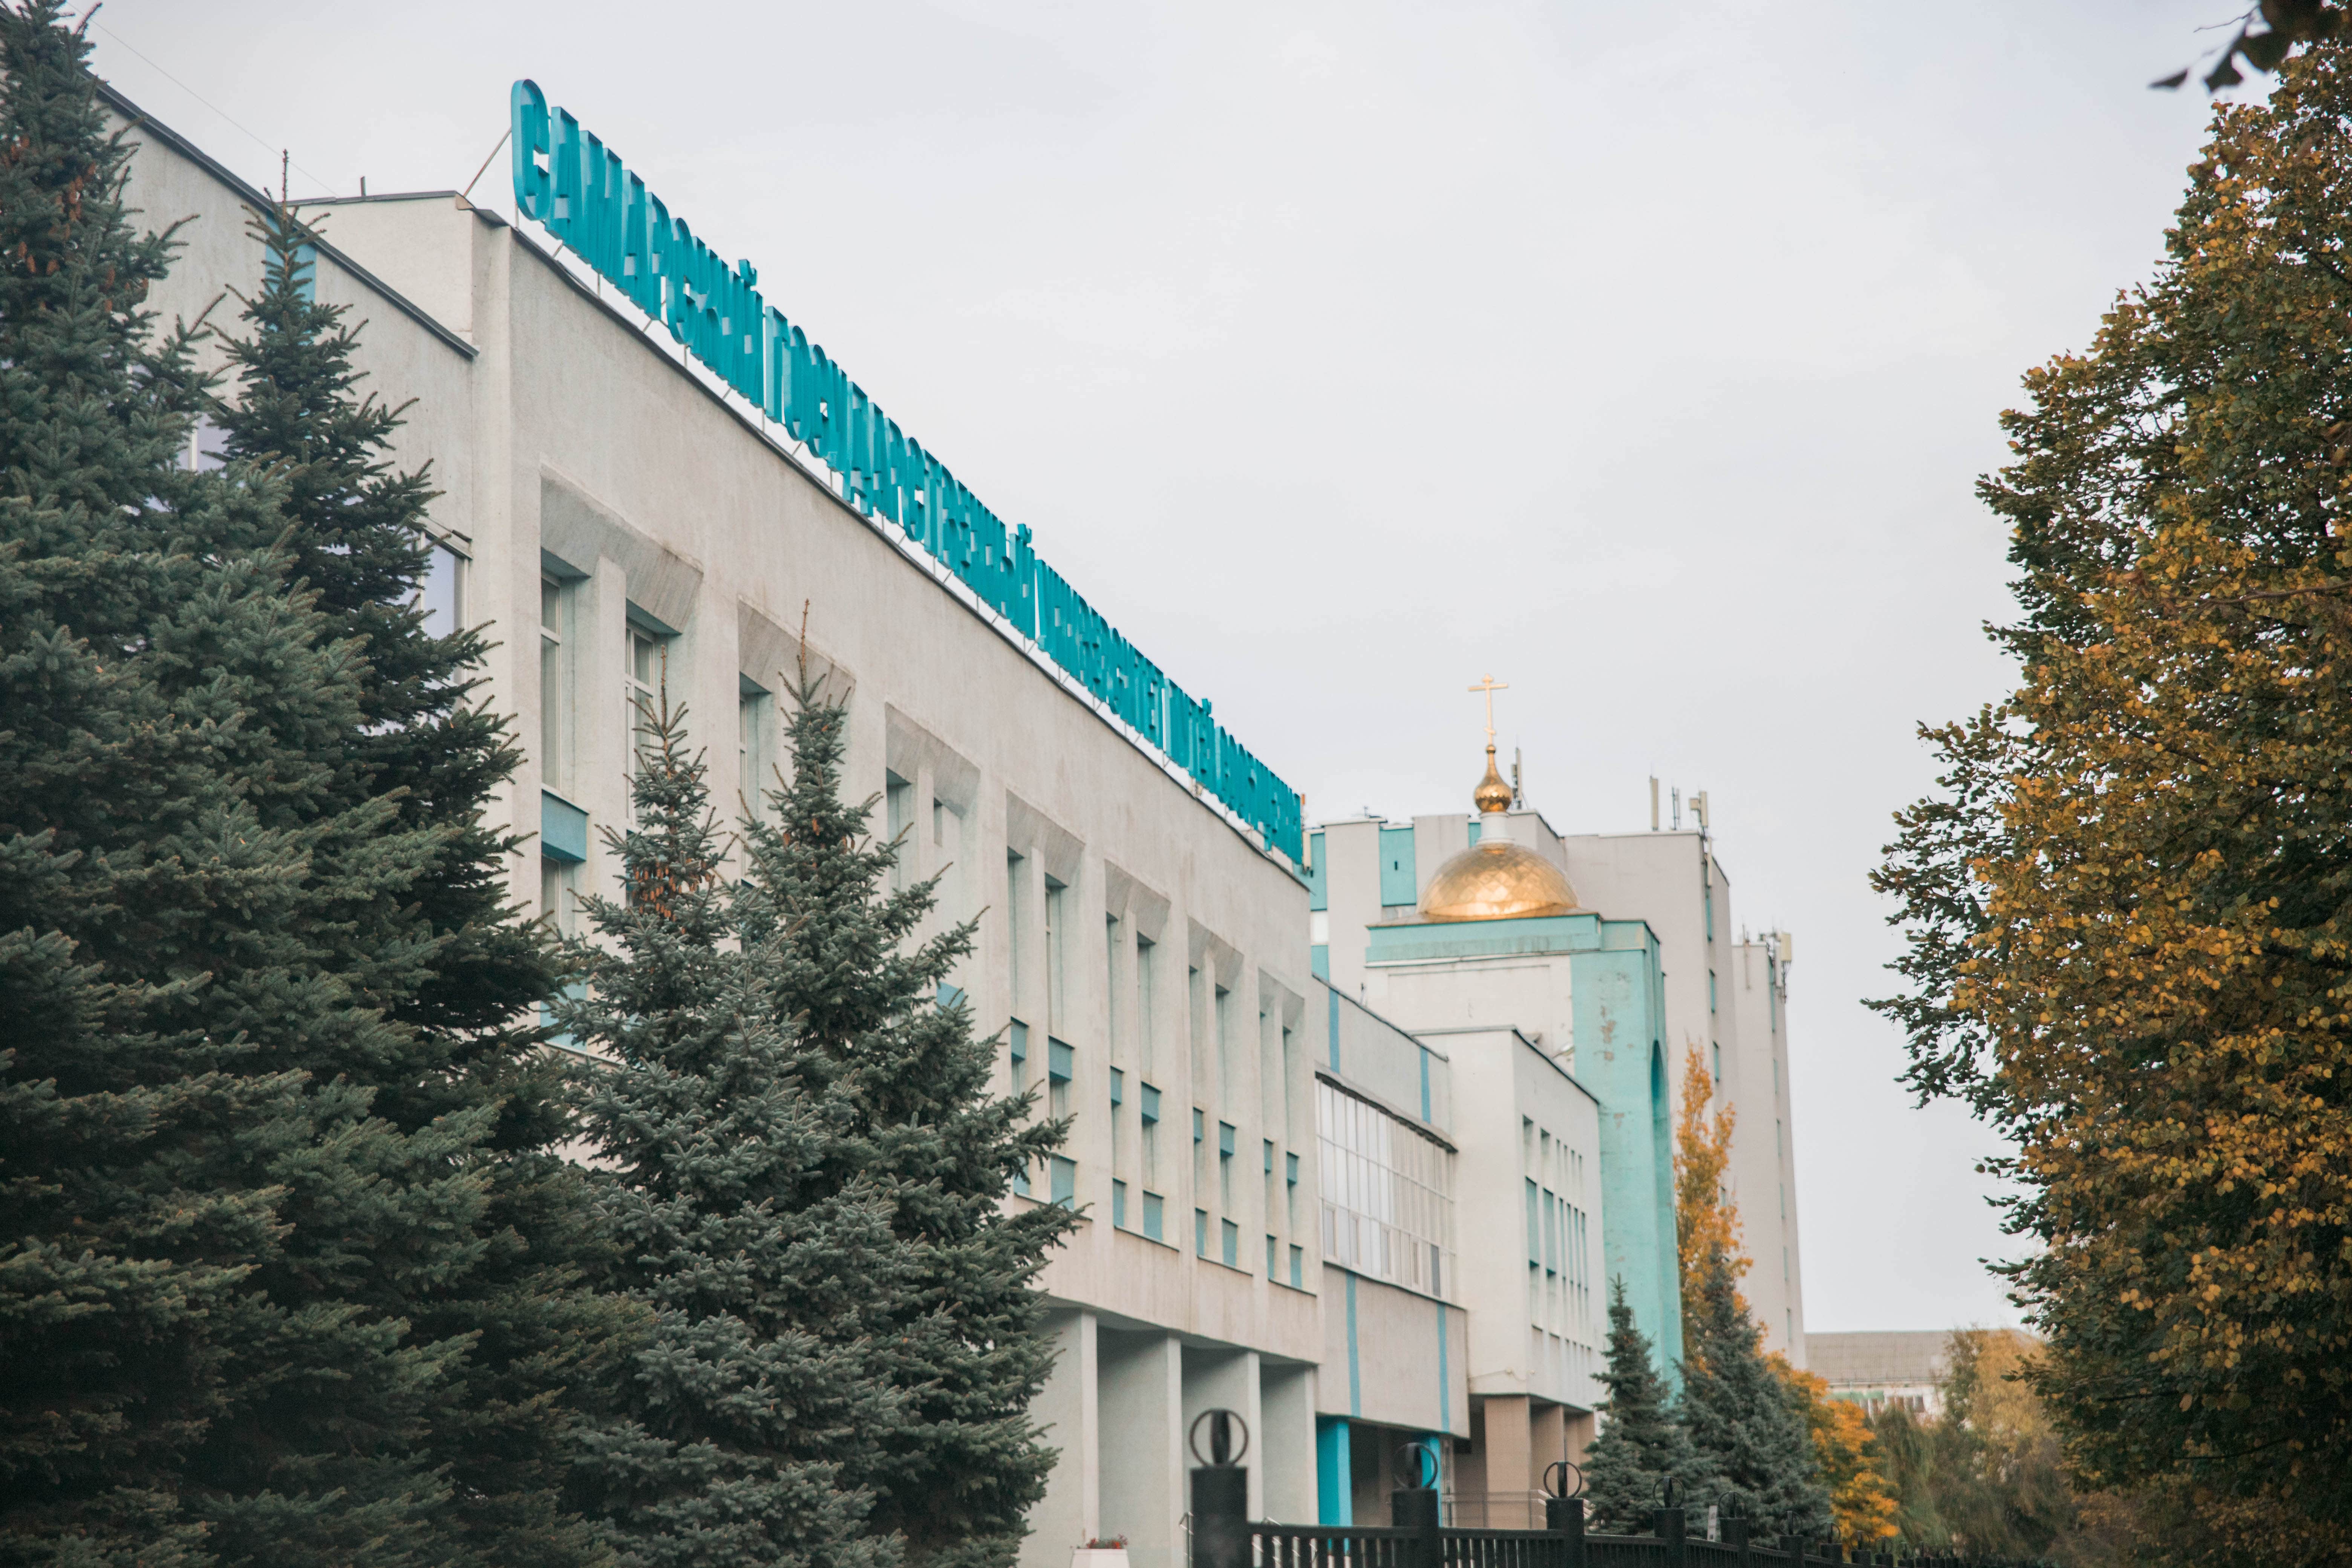 Самарский государственный университет путей сообщения